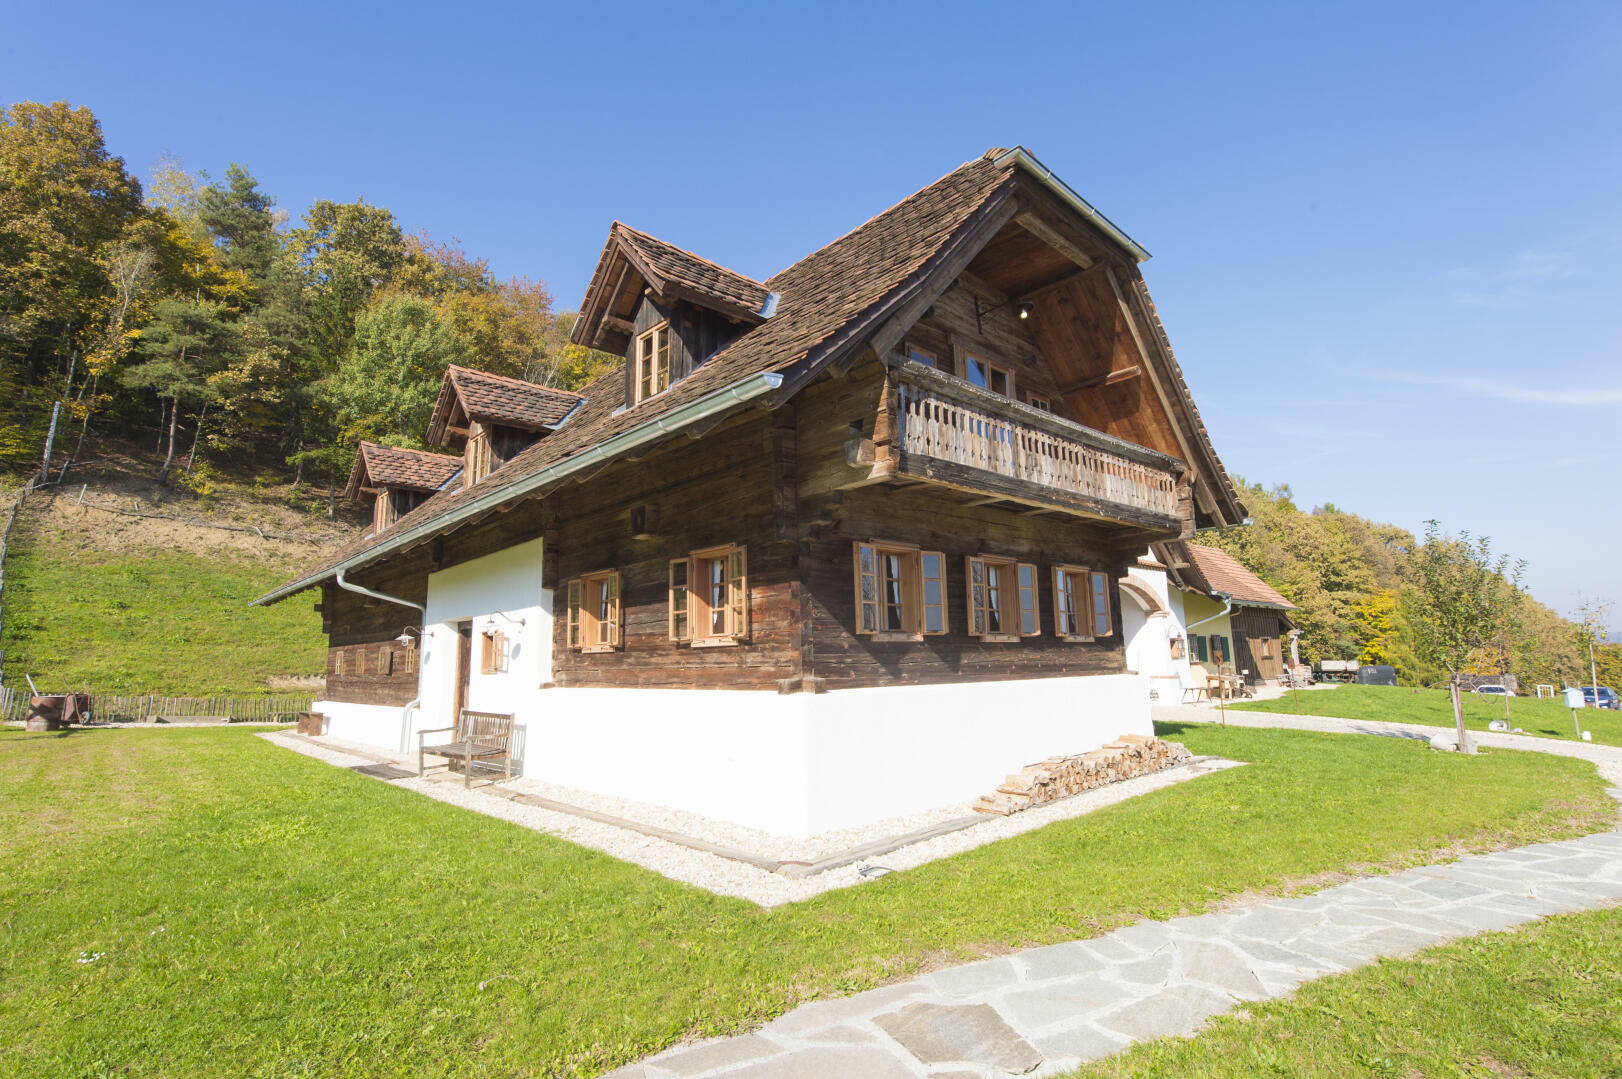 Land- und Forstwirtschaft zu kaufen: Ober-Henndorf, 8020 Graz - Landhaus in Thermenregion (1)